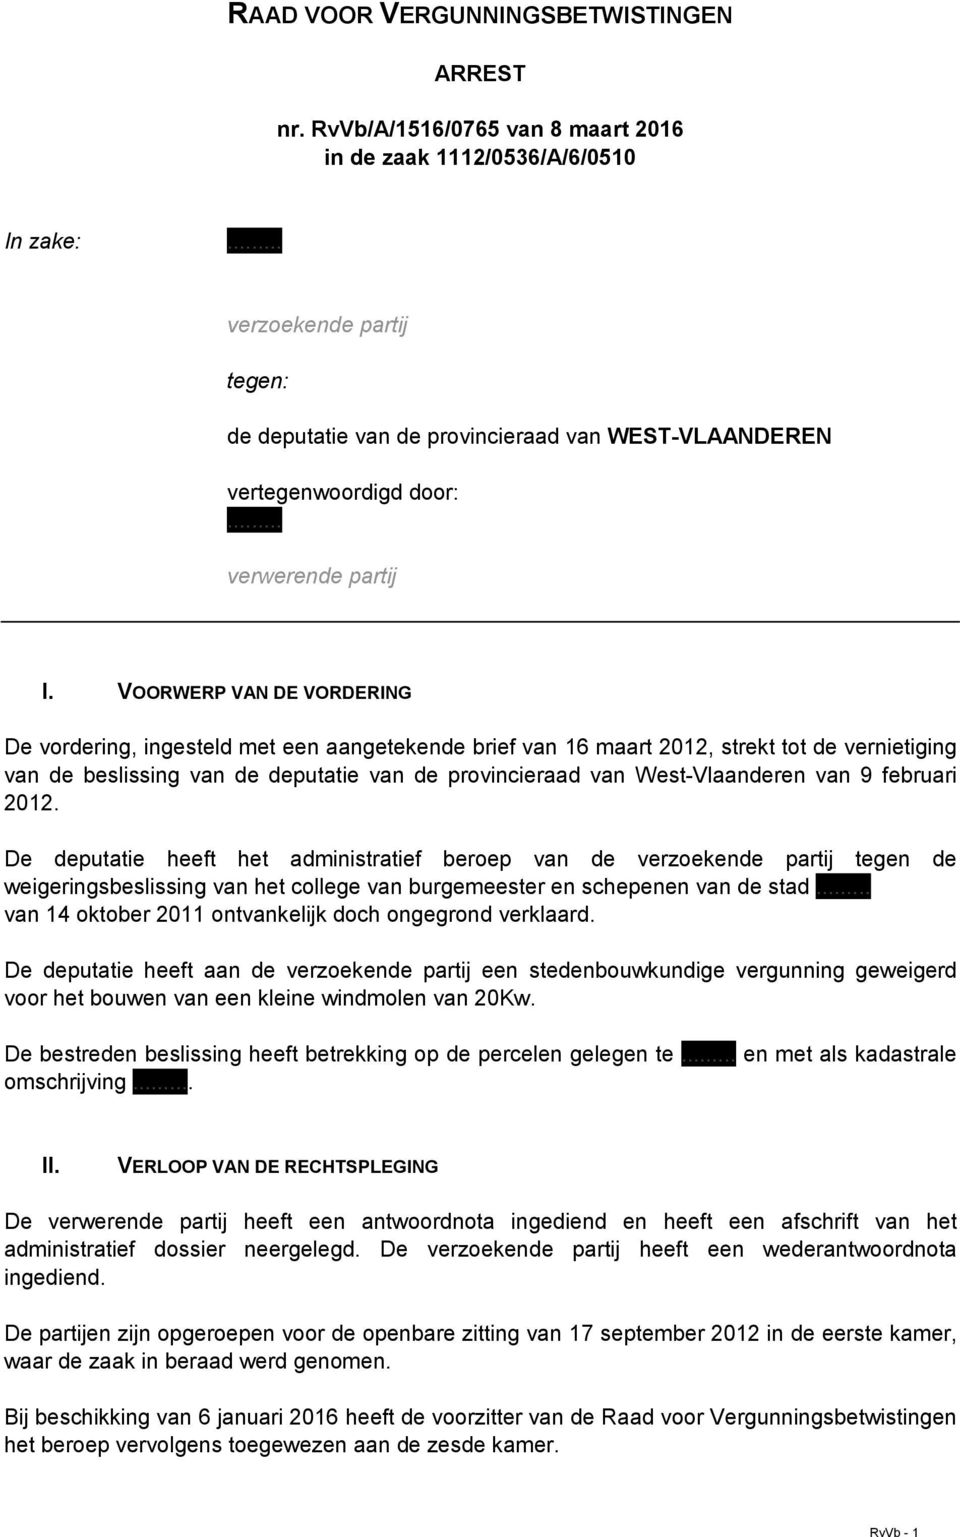 VOORWERP VAN DE VORDERING De vordering, ingesteld met een aangetekende brief van 16 maart 2012, strekt tot de vernietiging van de beslissing van de deputatie van de provincieraad van West-Vlaanderen